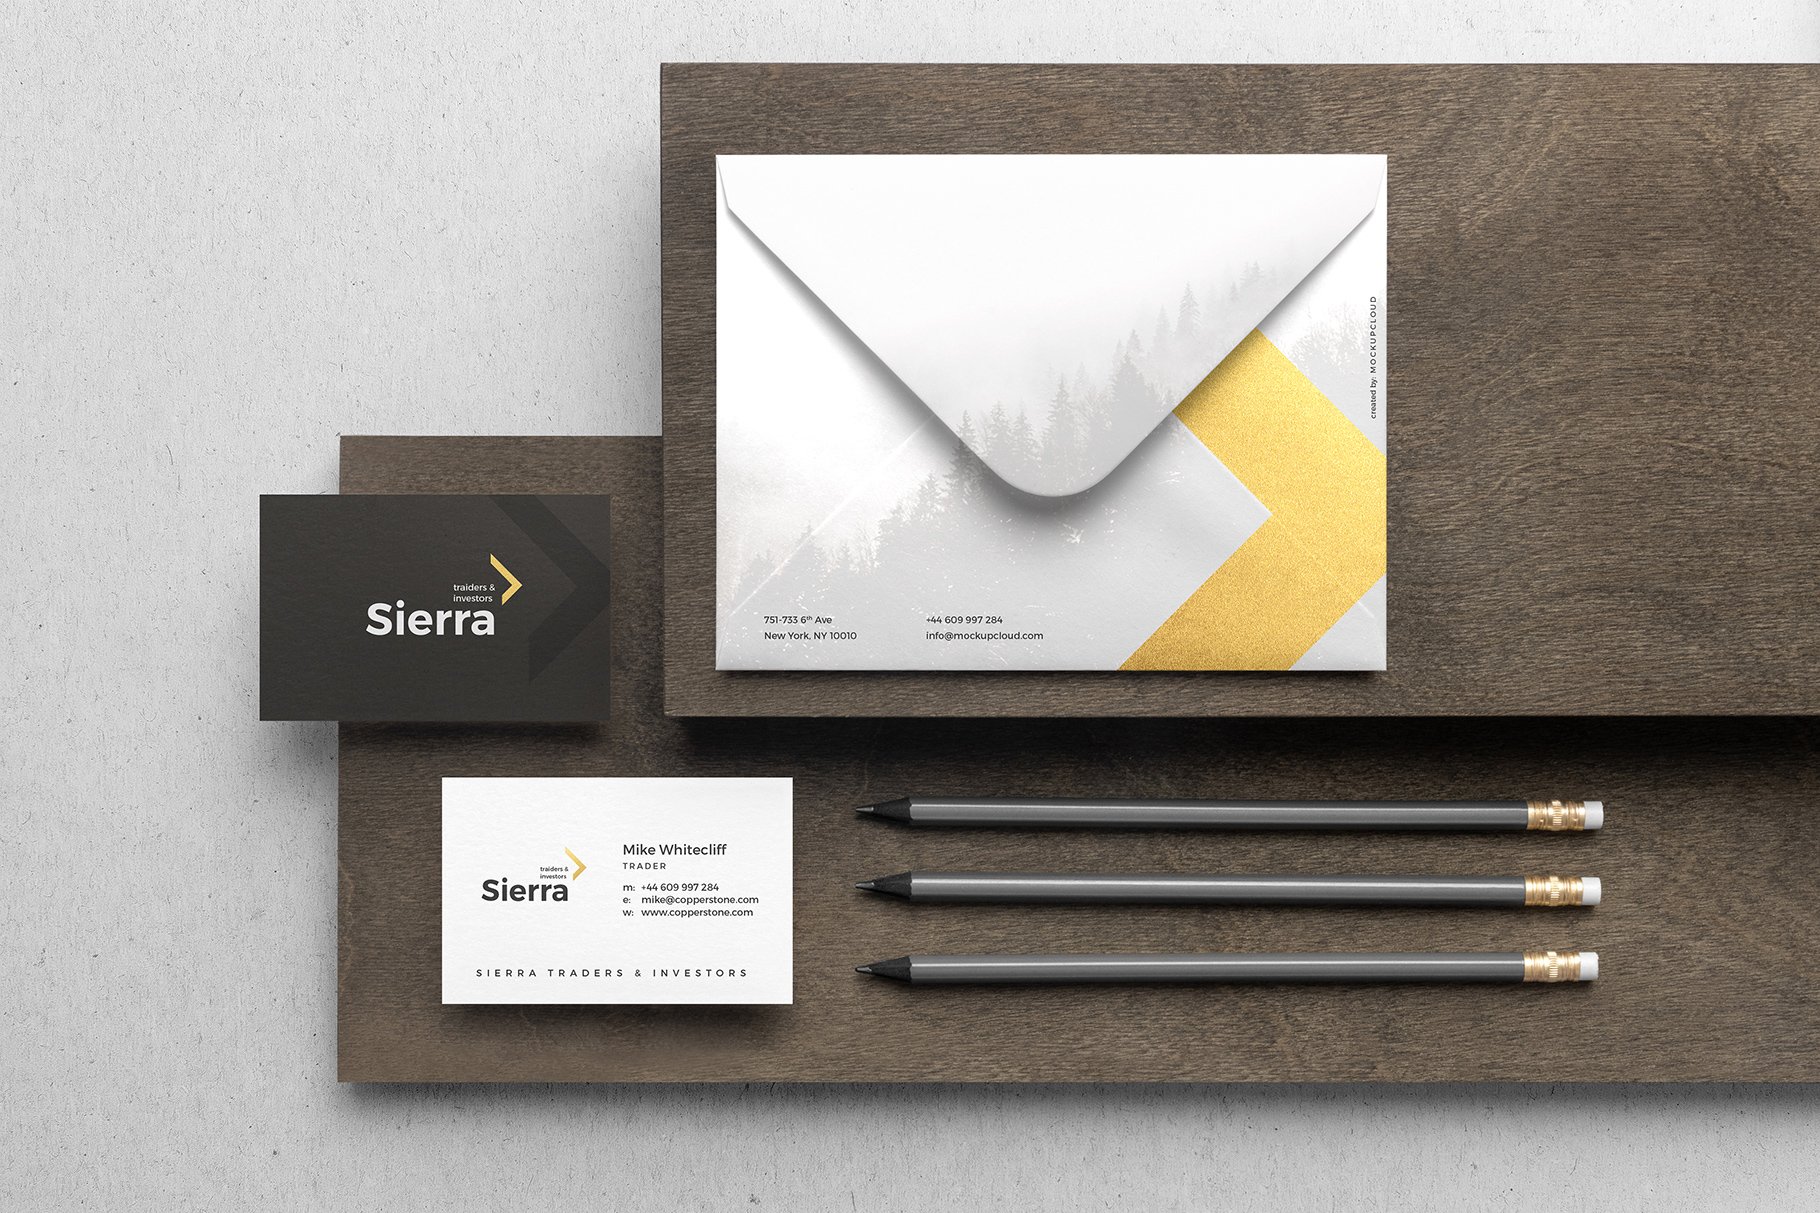 木香气息品牌VI设计提案办公文创展示样机 Sierra Branding Mockup Vol. 1插图8